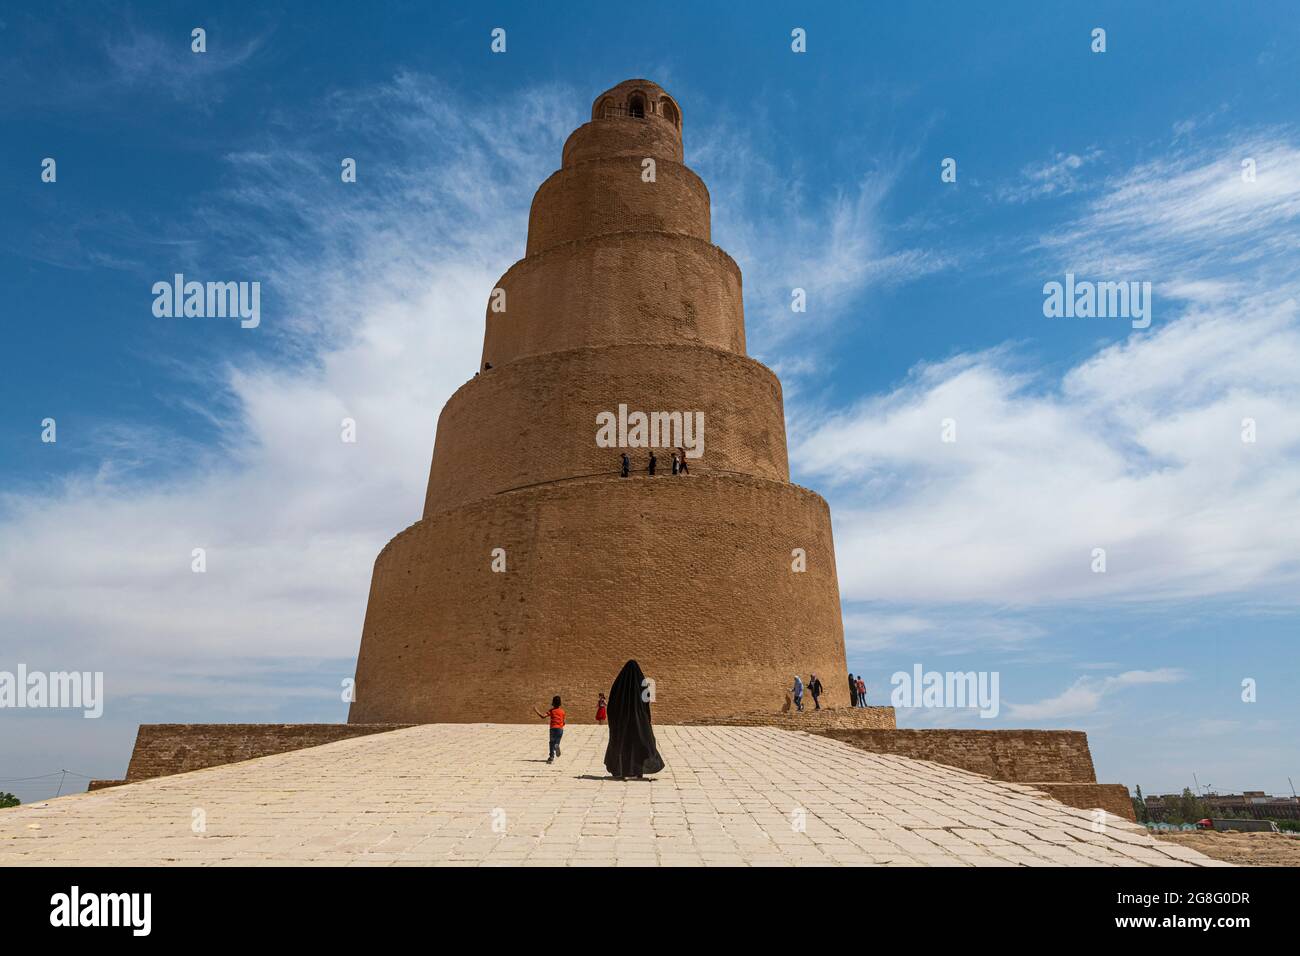 Spiralminarett der Großen Moschee von Samarra, UNESCO-Weltkulturerbe, Samarra, Irak, Mittlerer Osten Stockfoto